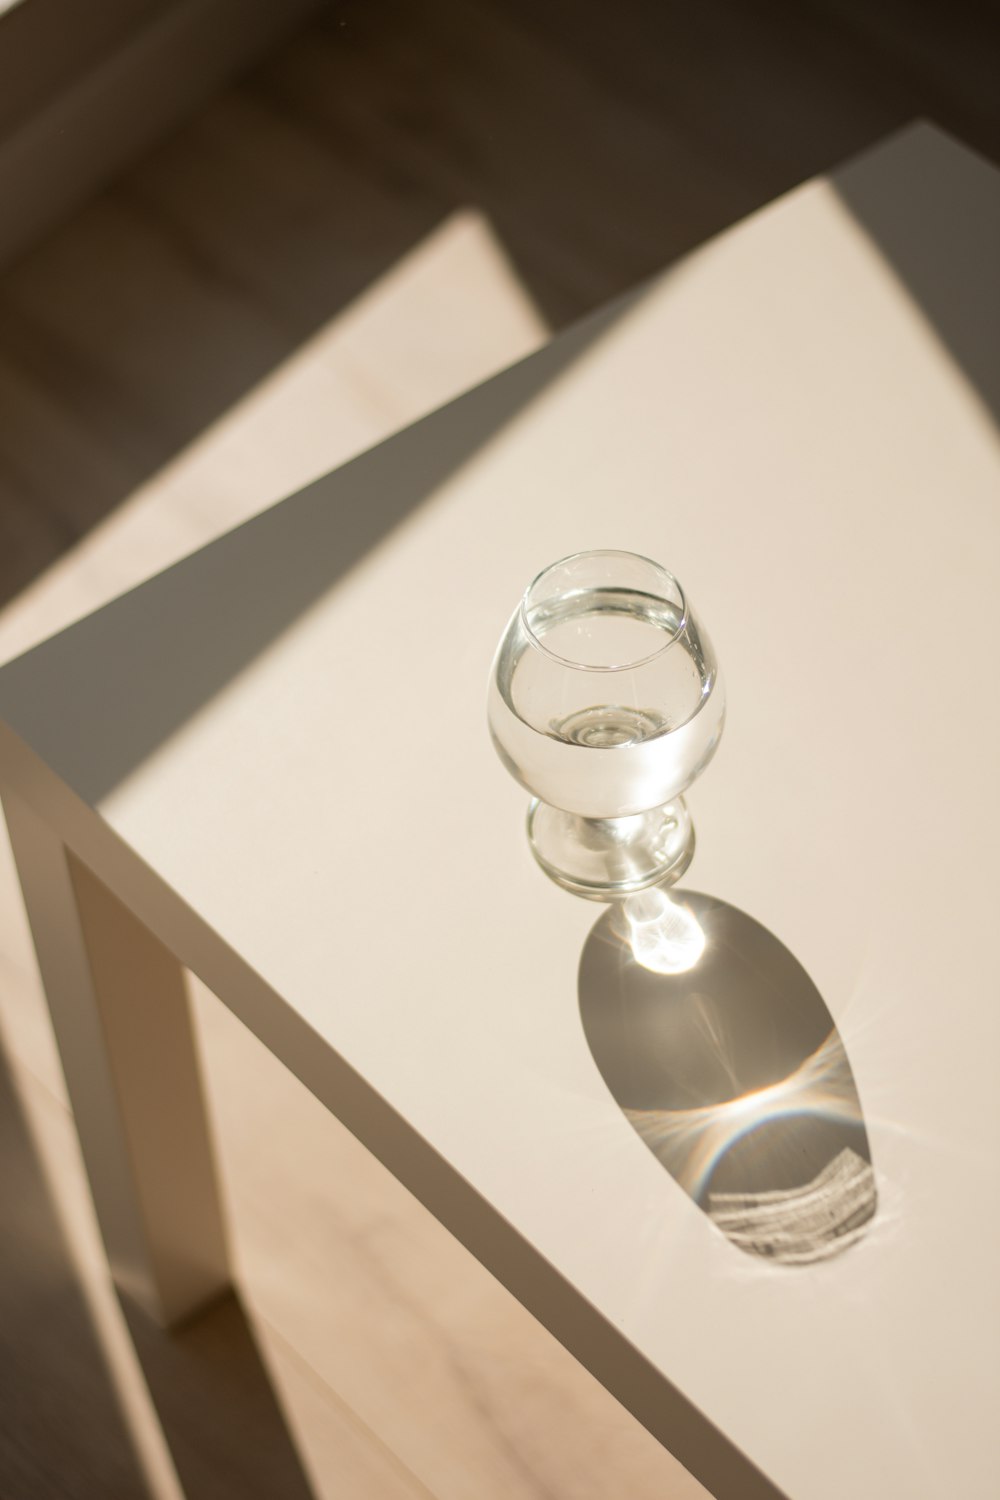 sfera di vetro trasparente su tavolo di legno bianco